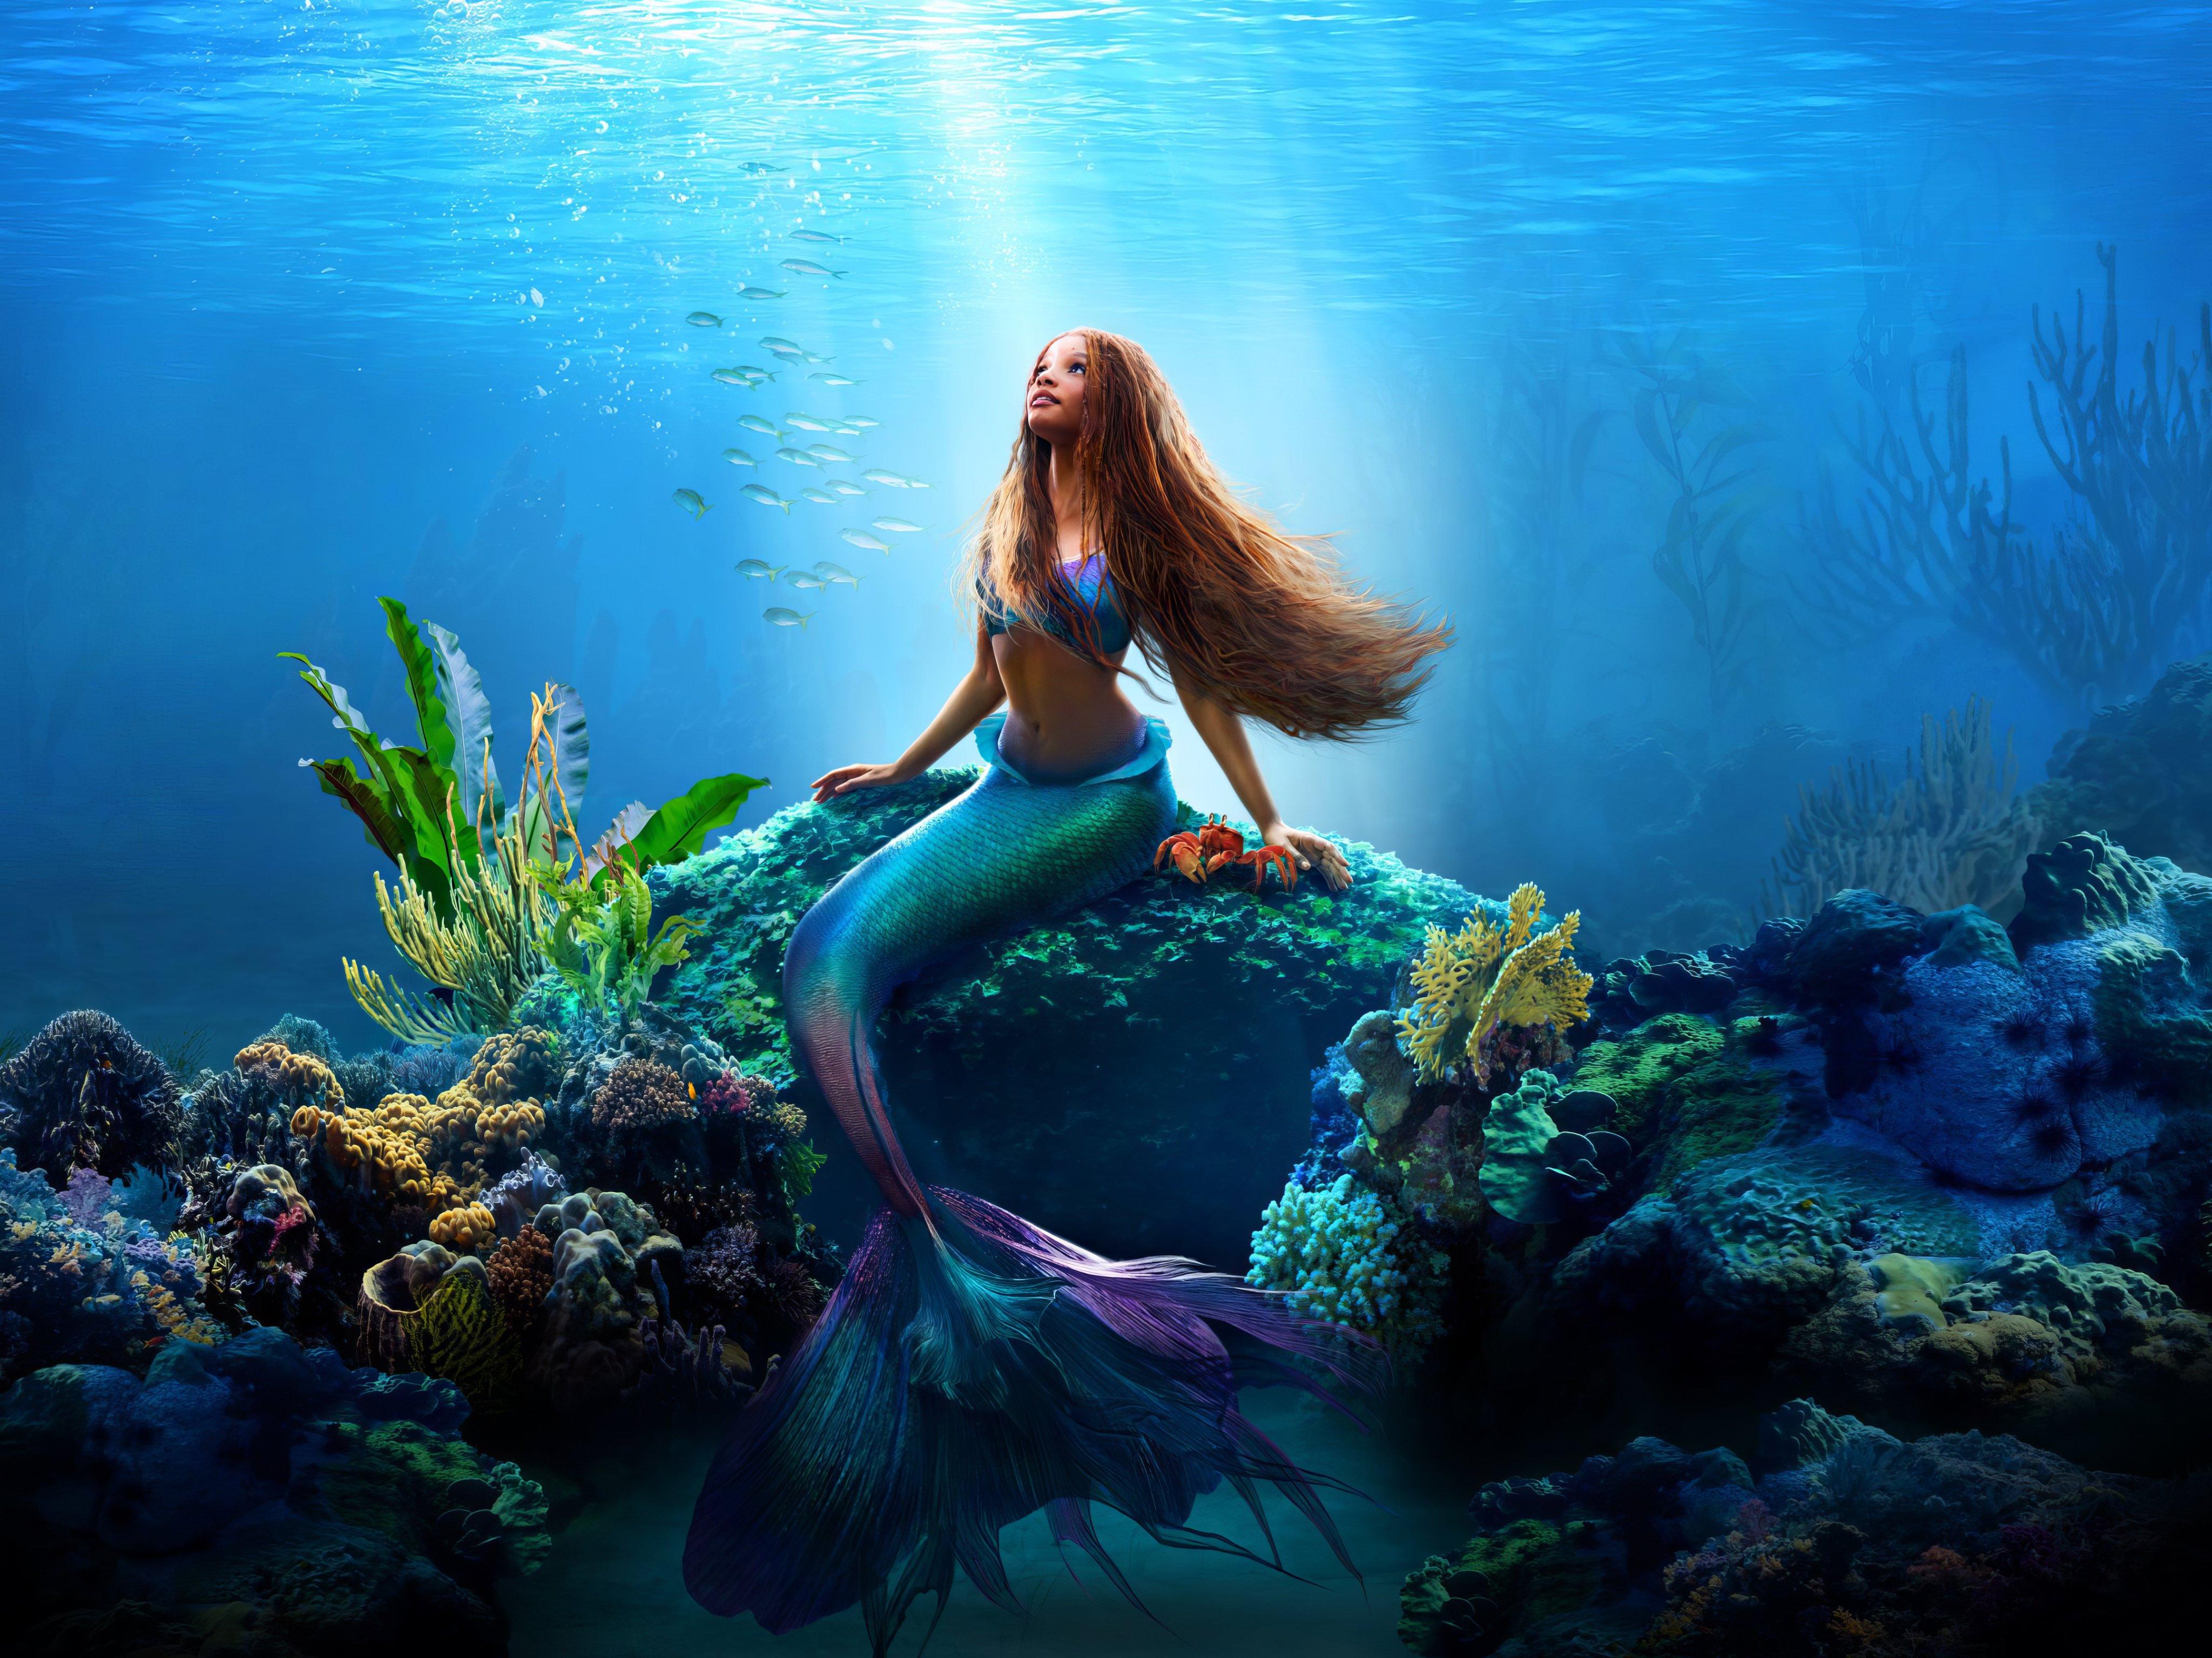 Movie The Little Mermaid 4k Ultra HD Wallpaper